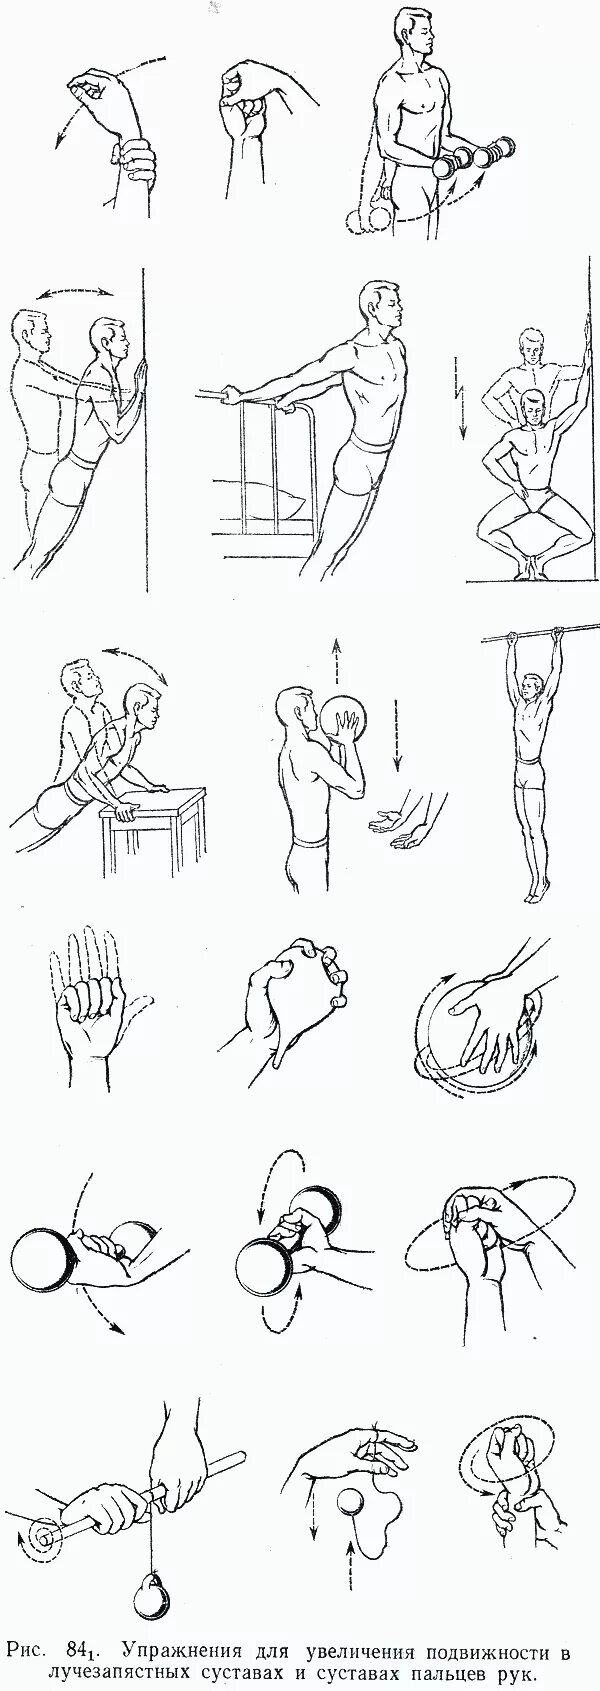 Лечебная гимнастика для локтевого сустава. ЛФК при контрактуре плечевого сустава после перелома. Гимнастика для плечевого сустава после операции реабилитация. Упражнения для реабилитации локтевого сустава после перелома.